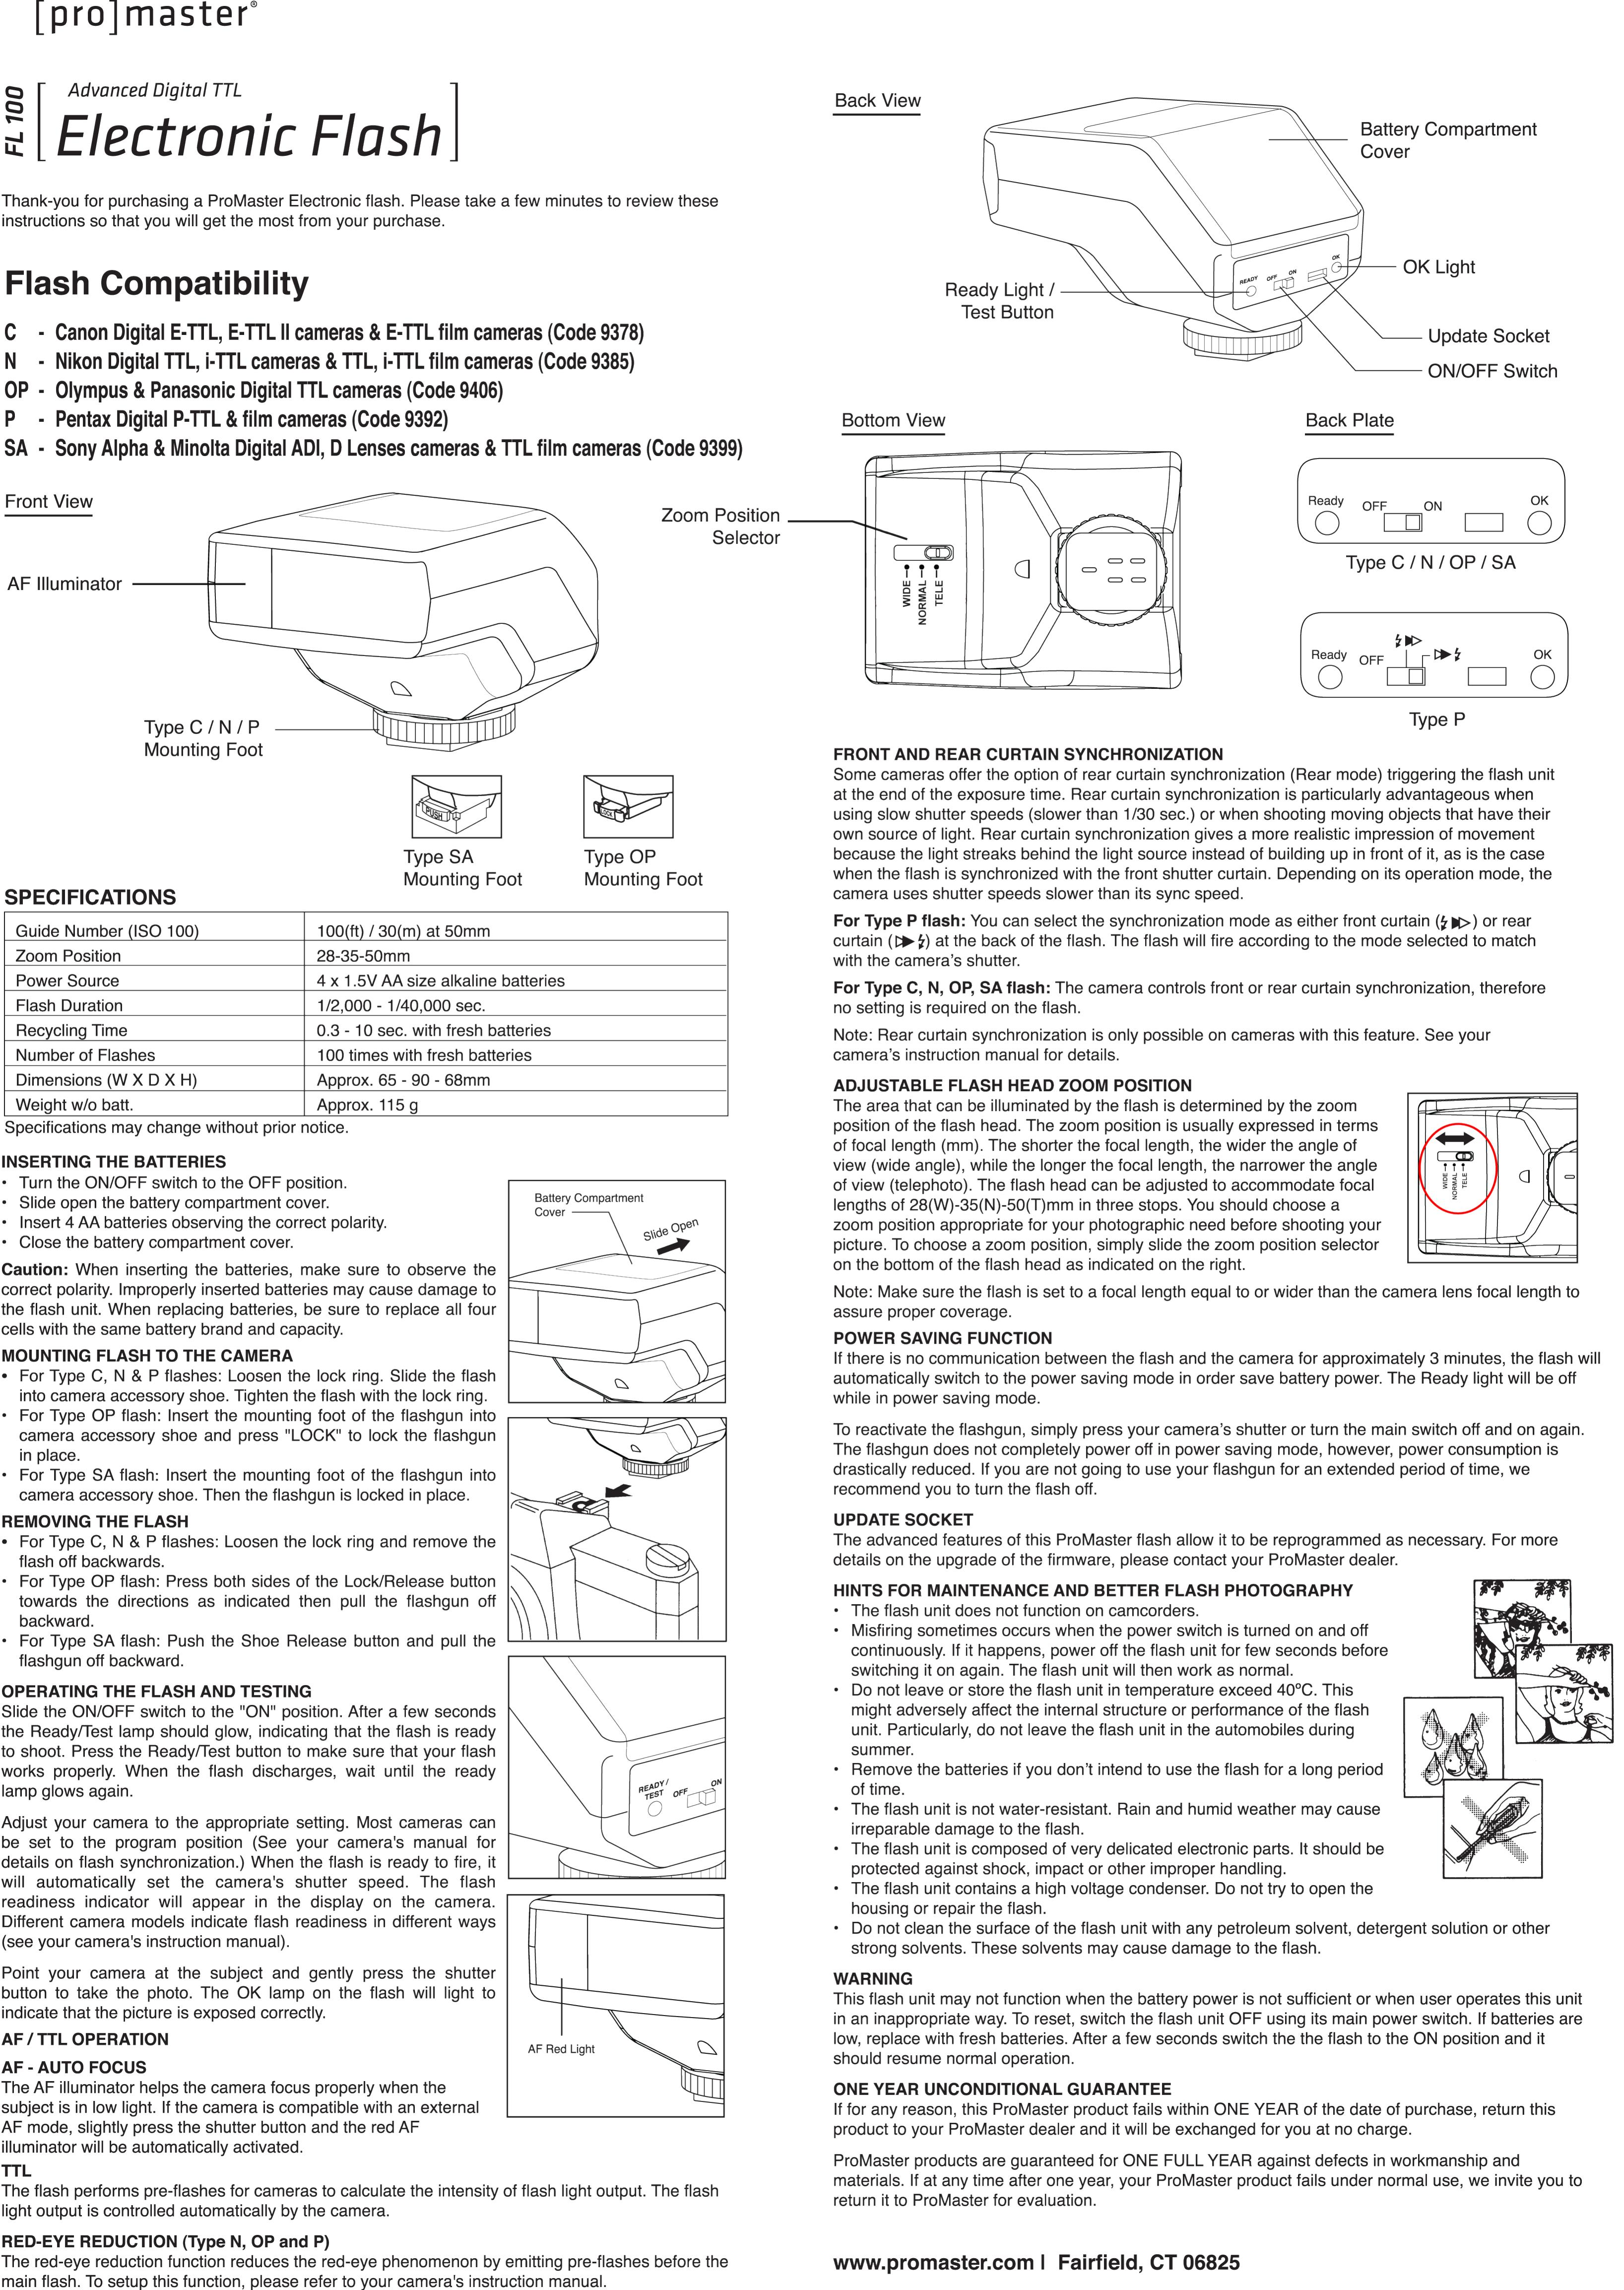 ProMaster FL100 (Nikon) Camera Accessories User Manual